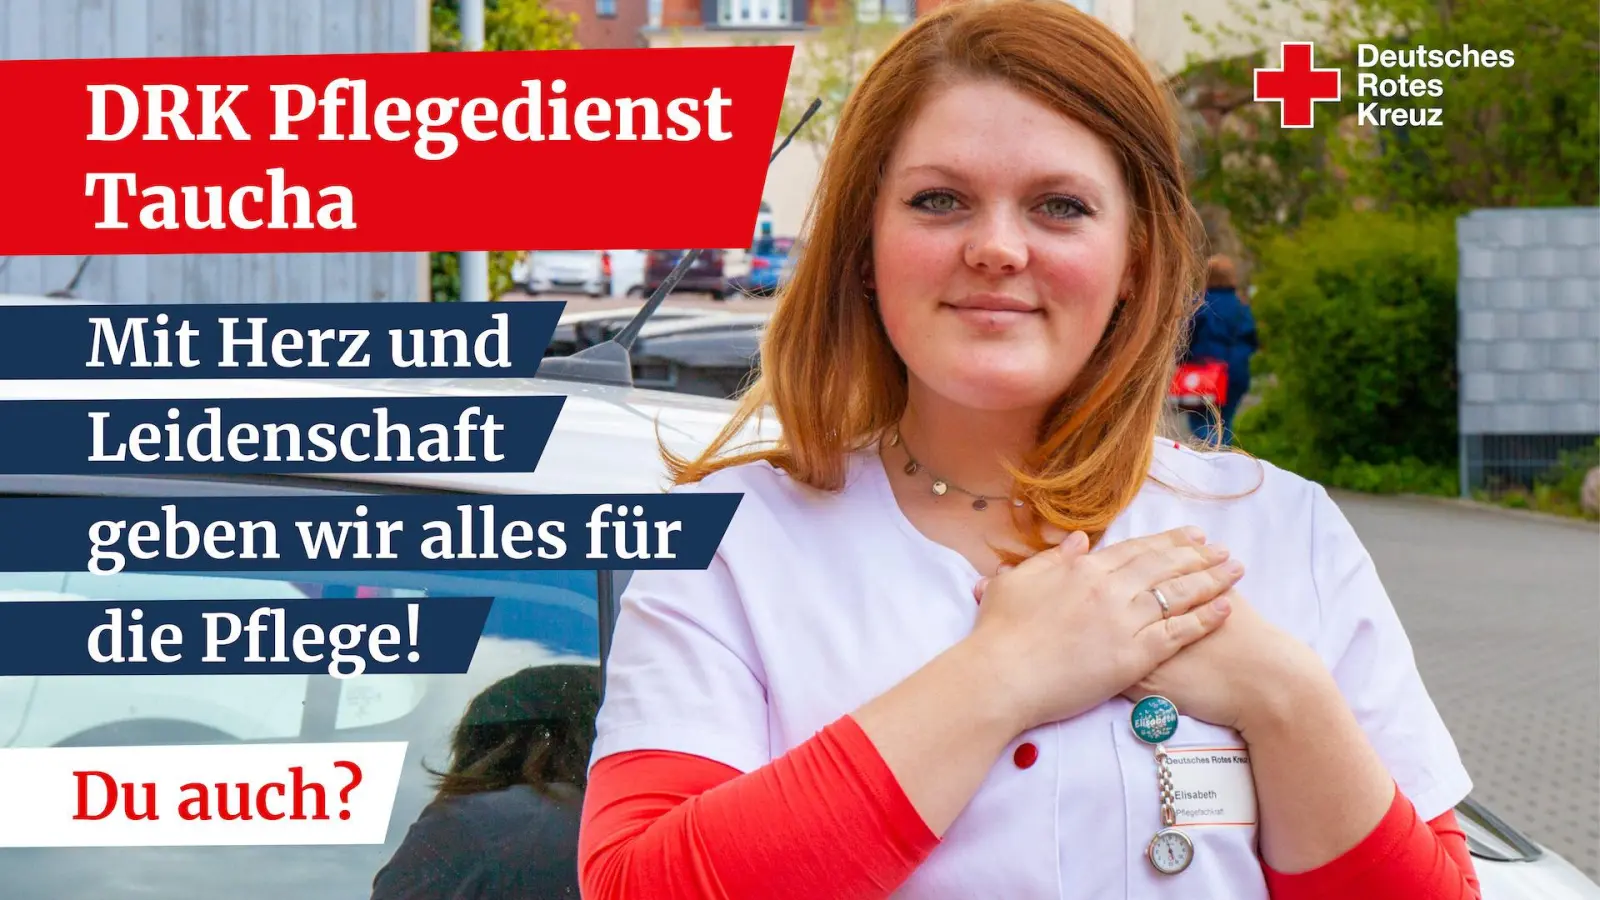 Stellenanzeige: Deutsches Rotes Kreuz sucht Fachkräfte in der Pflege (Foto: taucha-kompakt.de)